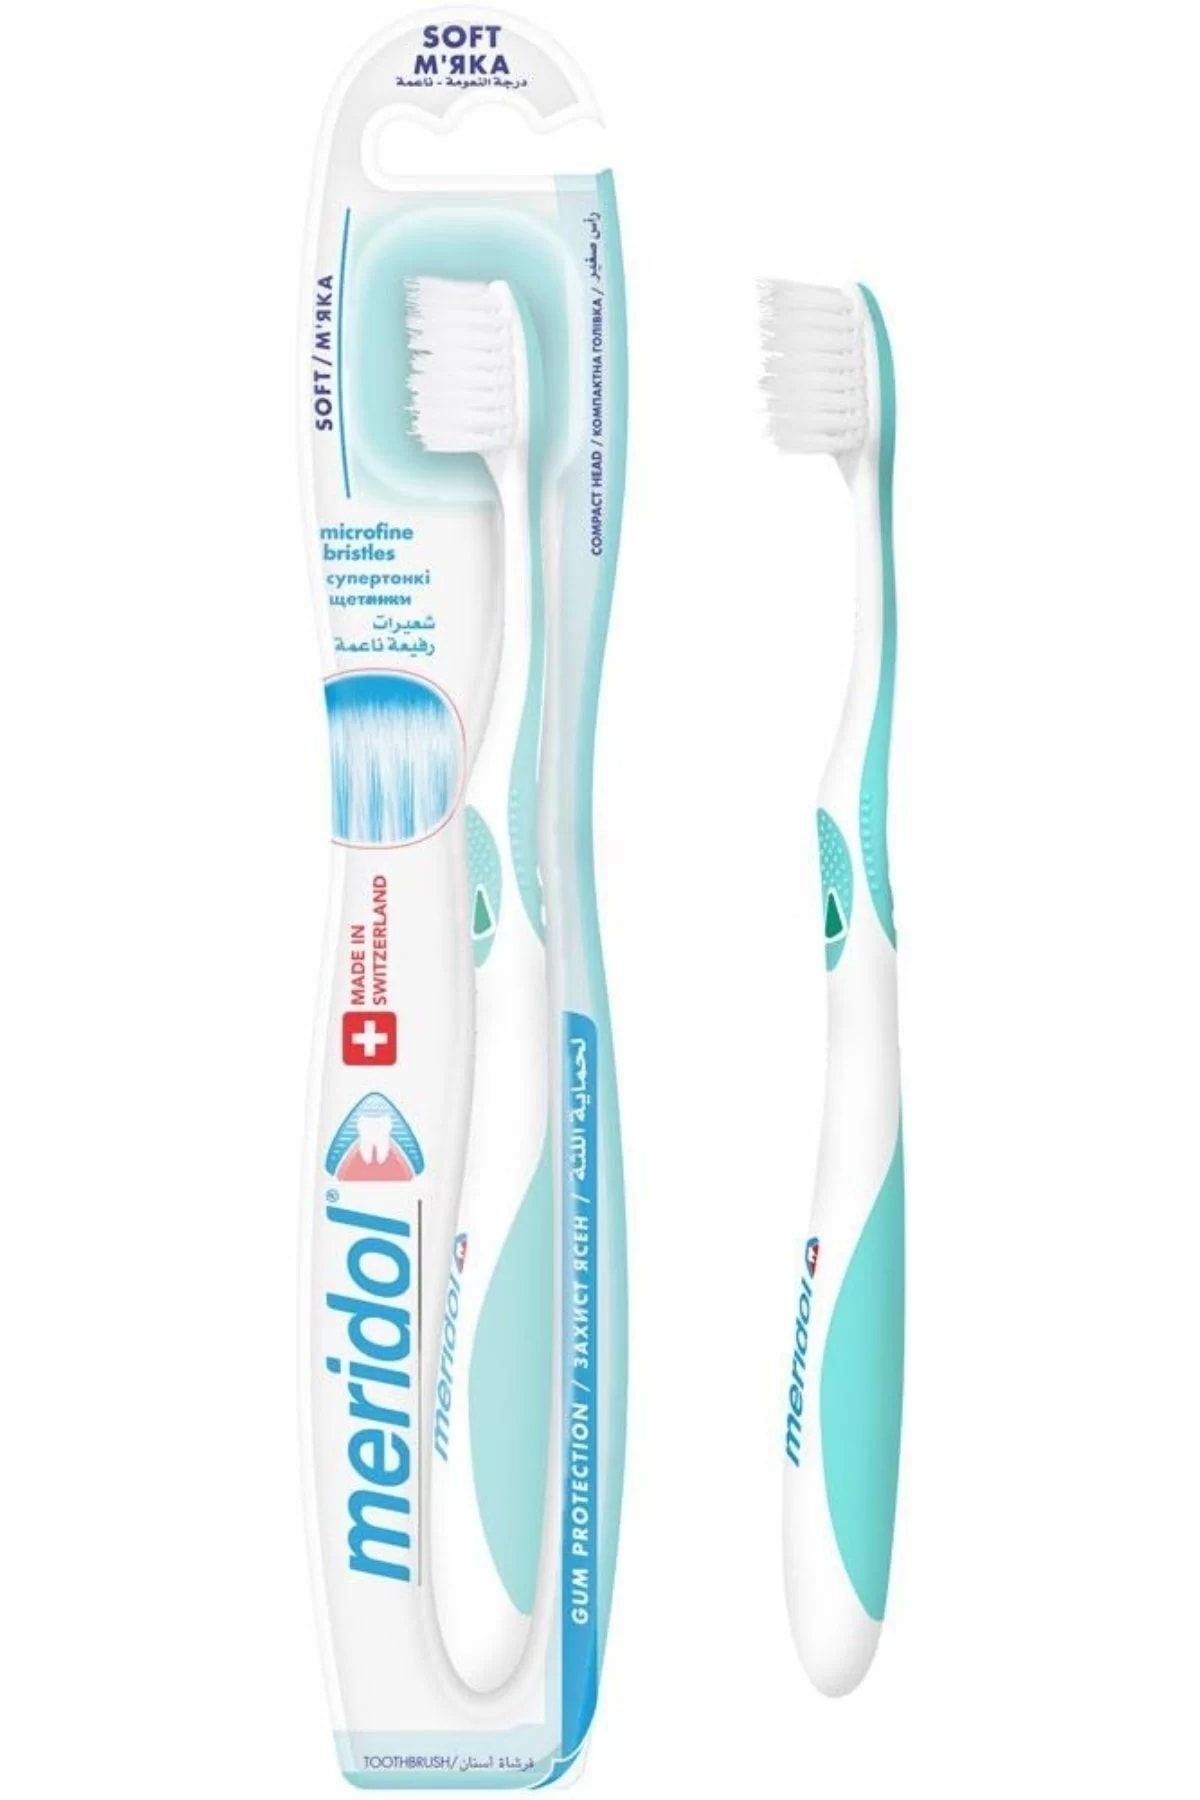 Meridol Diş Fırçası Soft (YUMUŞAK) Beyaz - Gri